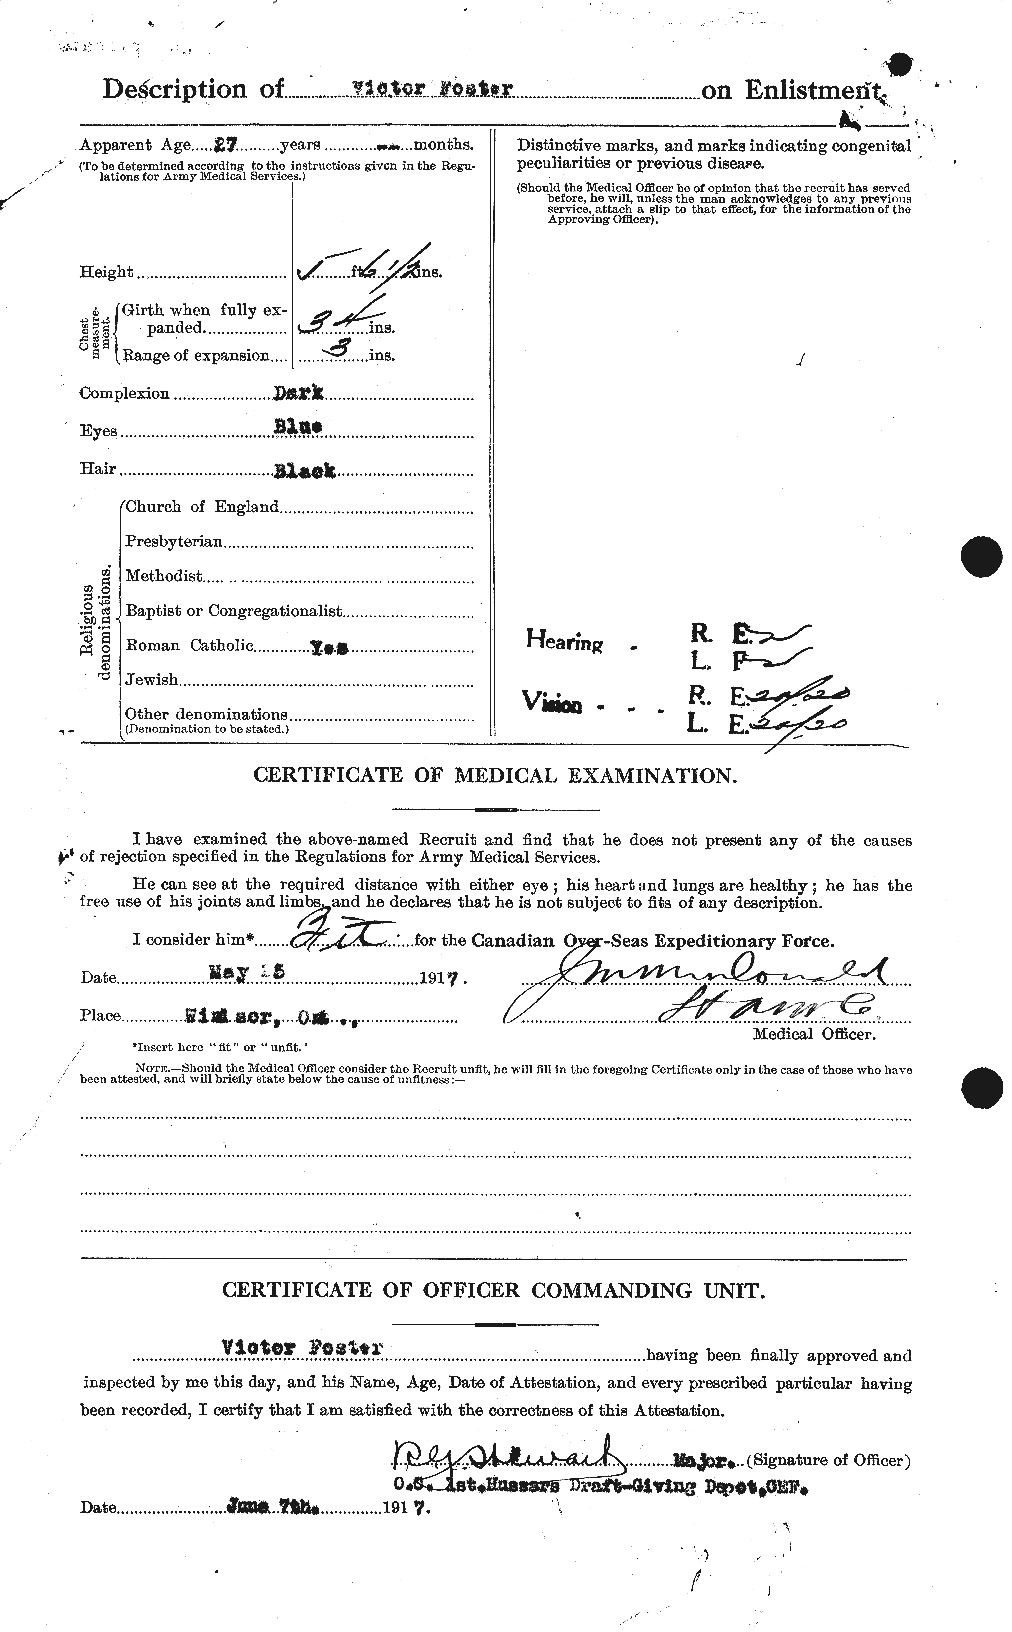 Dossiers du Personnel de la Première Guerre mondiale - CEC 335248b